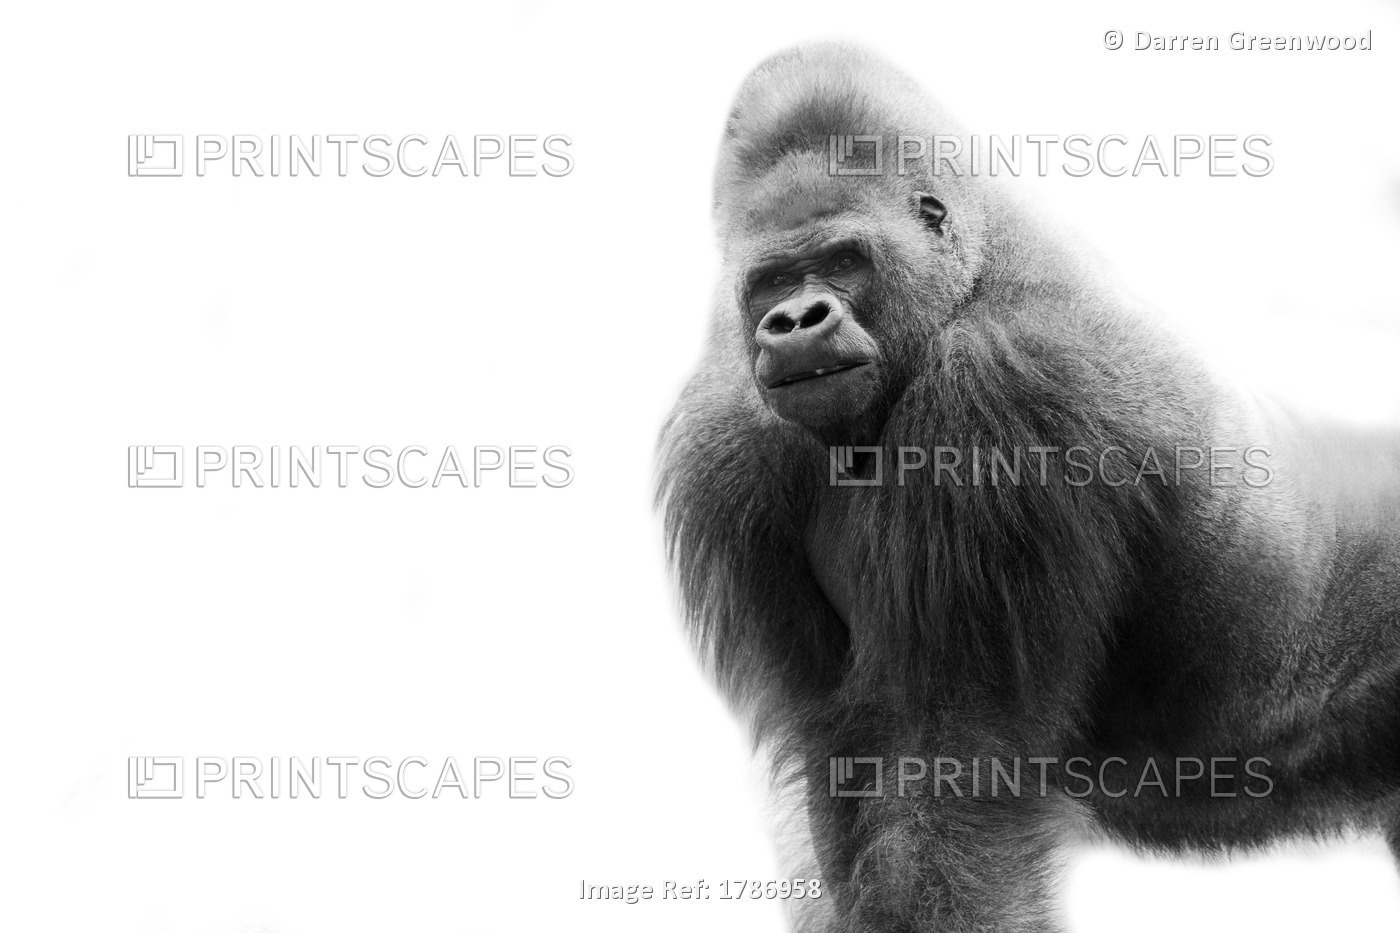 Black And White Portrait Of A Gorilla